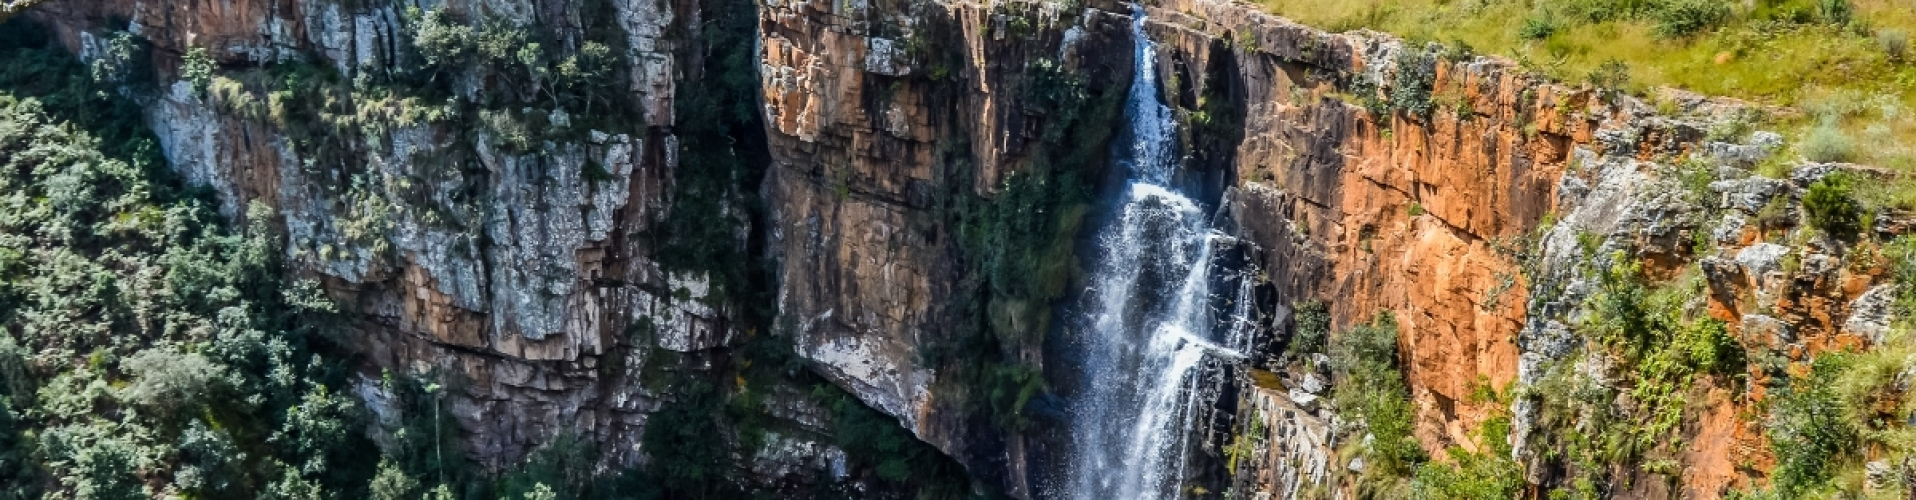 mpumalanga berkin falls